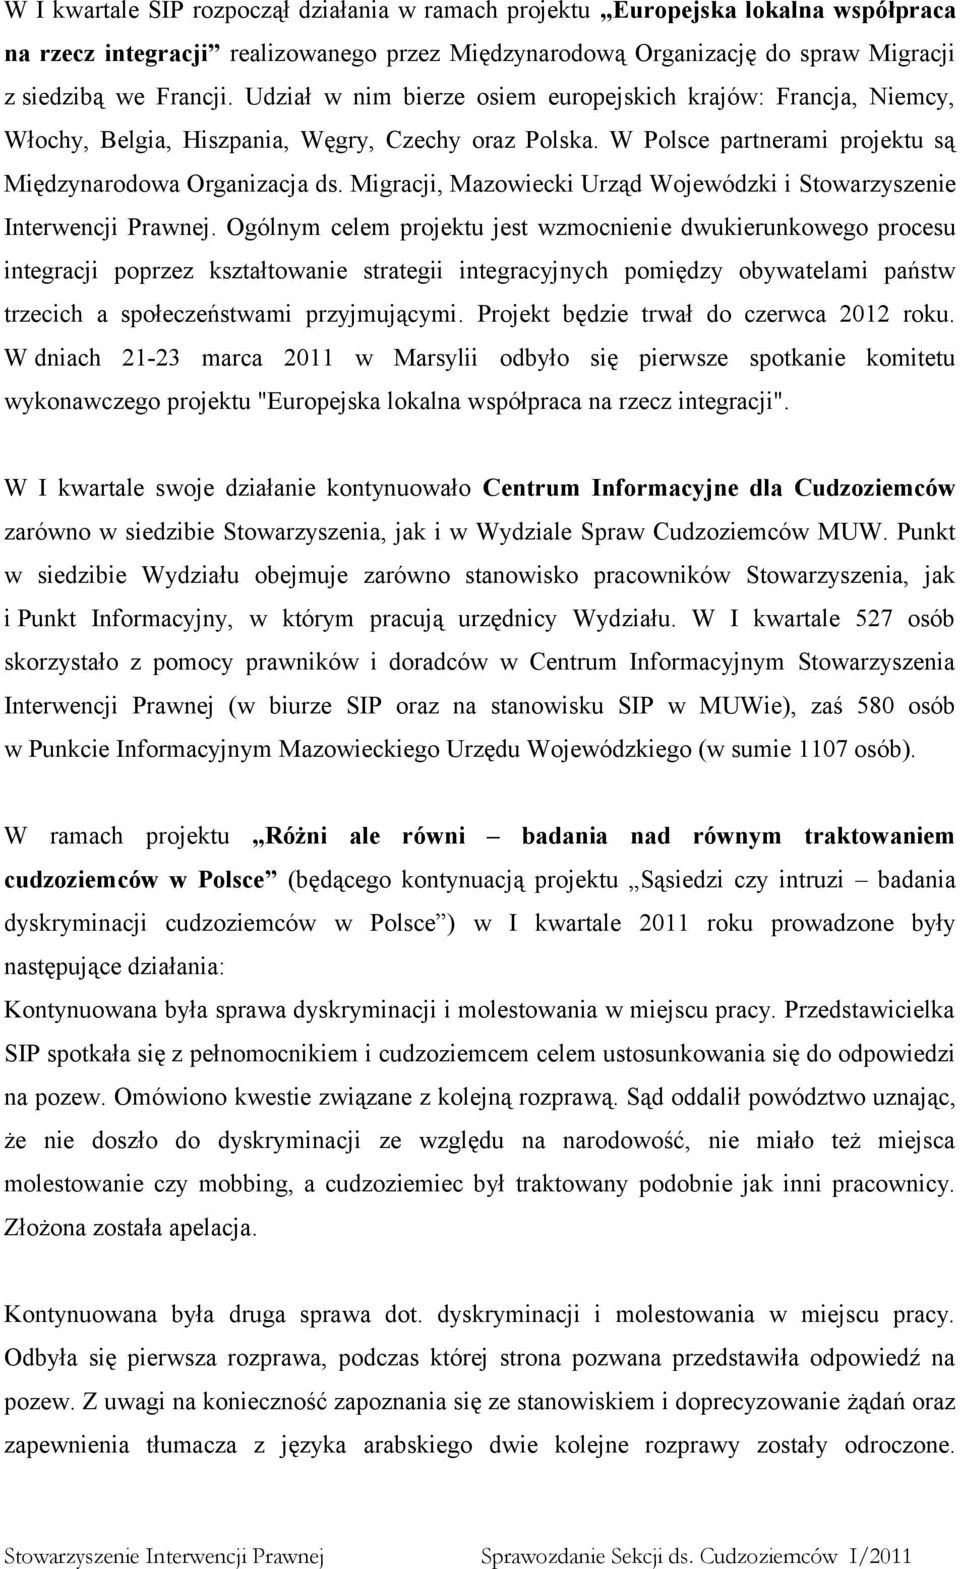 Migracji, Mazowiecki Urząd Wojewódzki i Stowarzyszenie Interwencji Prawnej.